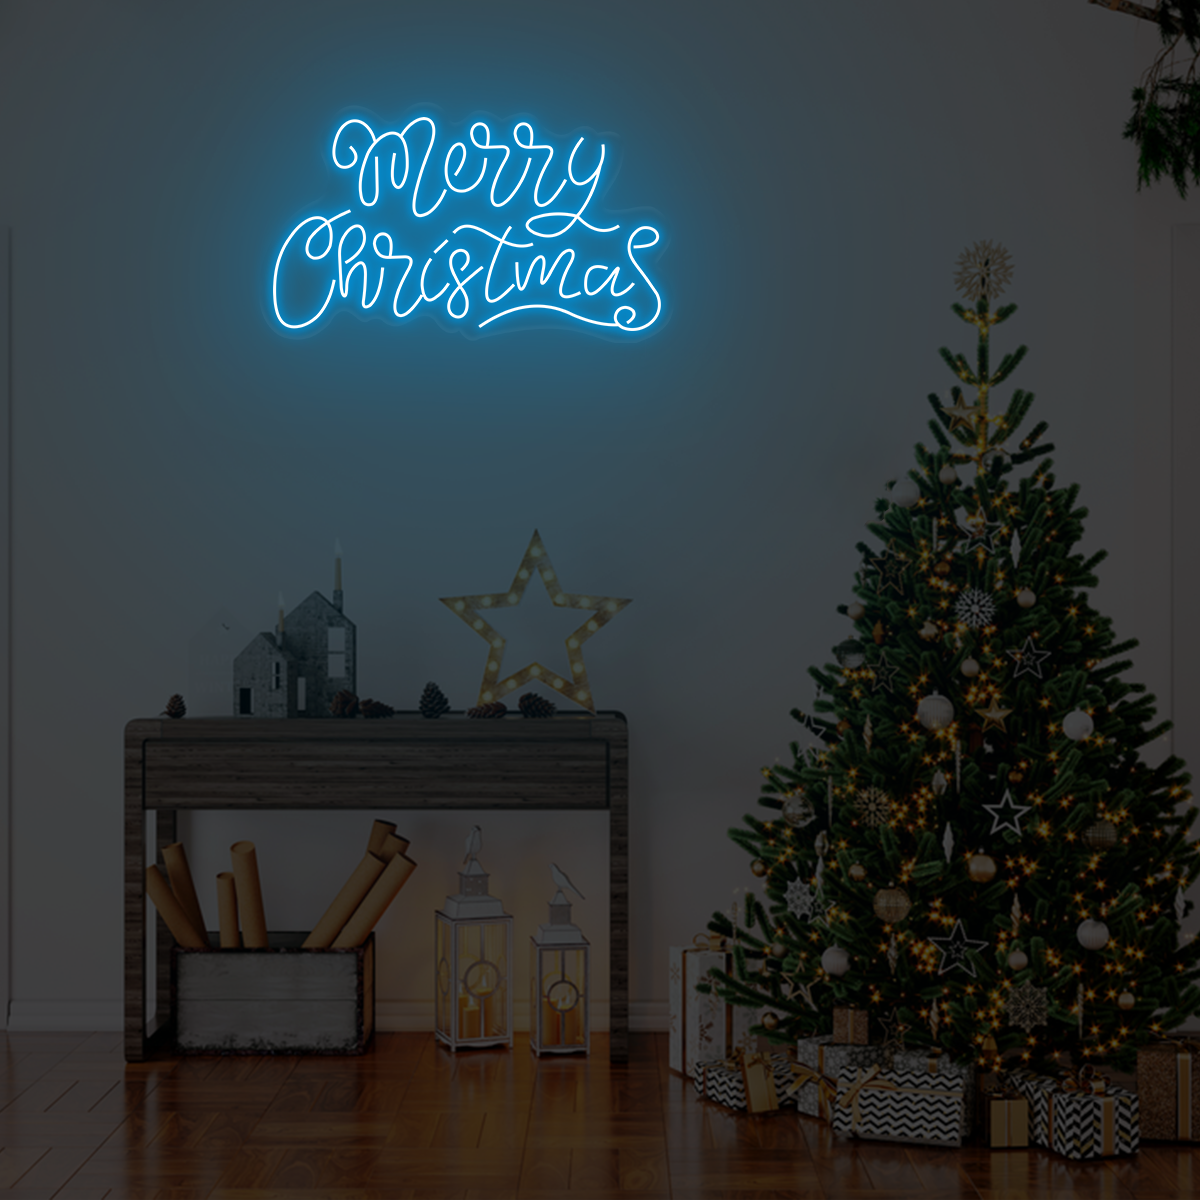 Merry Christmas light sign - Neonzastudio